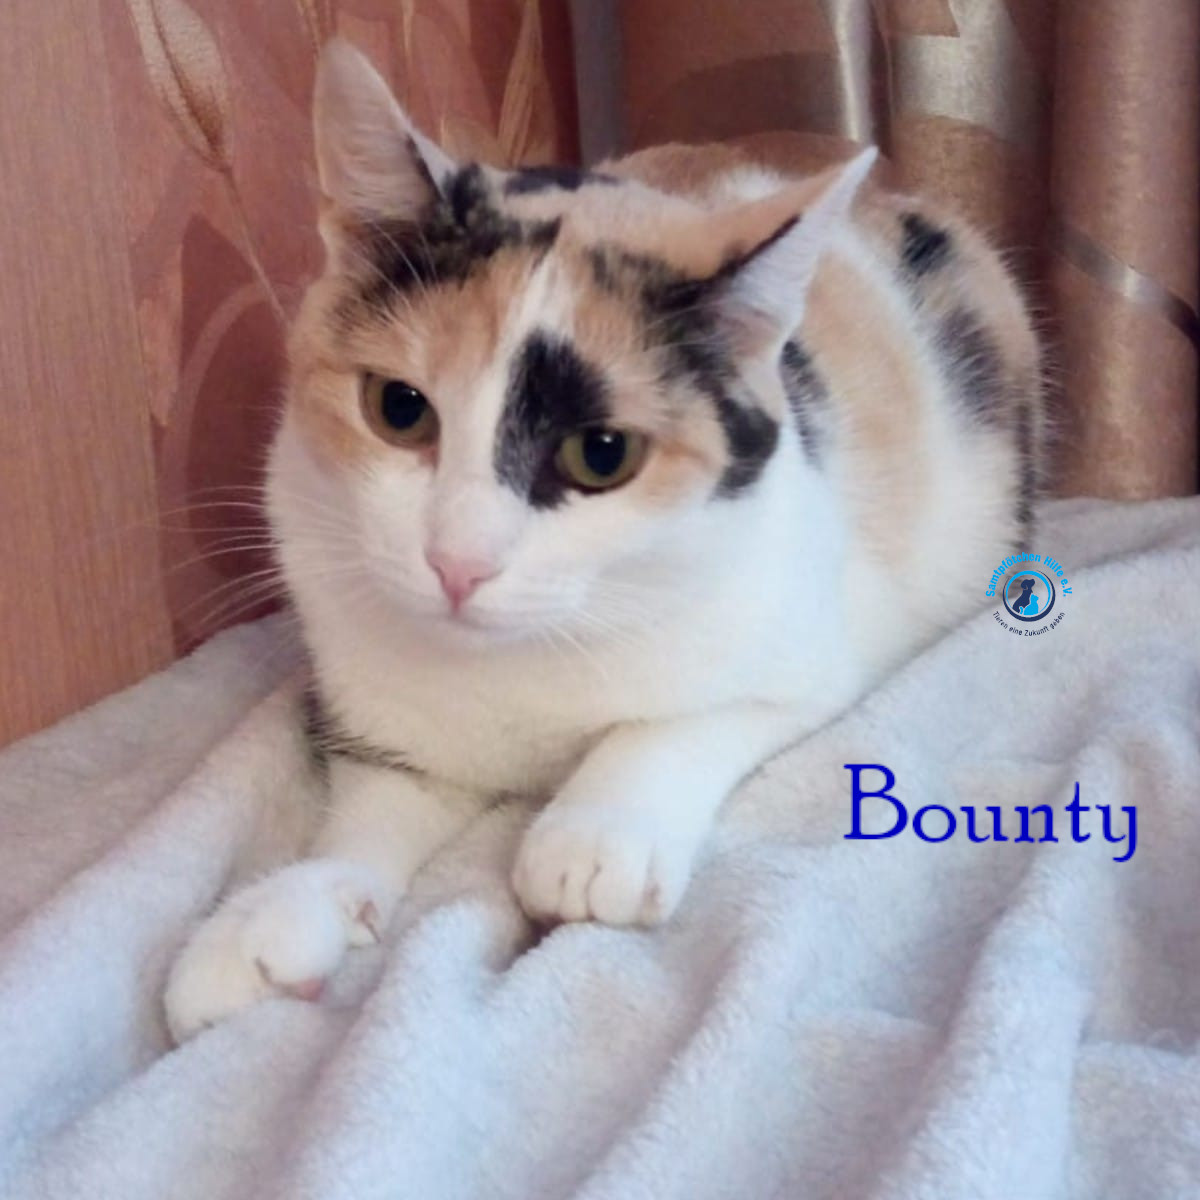 Nadezhda/Katzen/Bounty/Bounty12mN.jpg